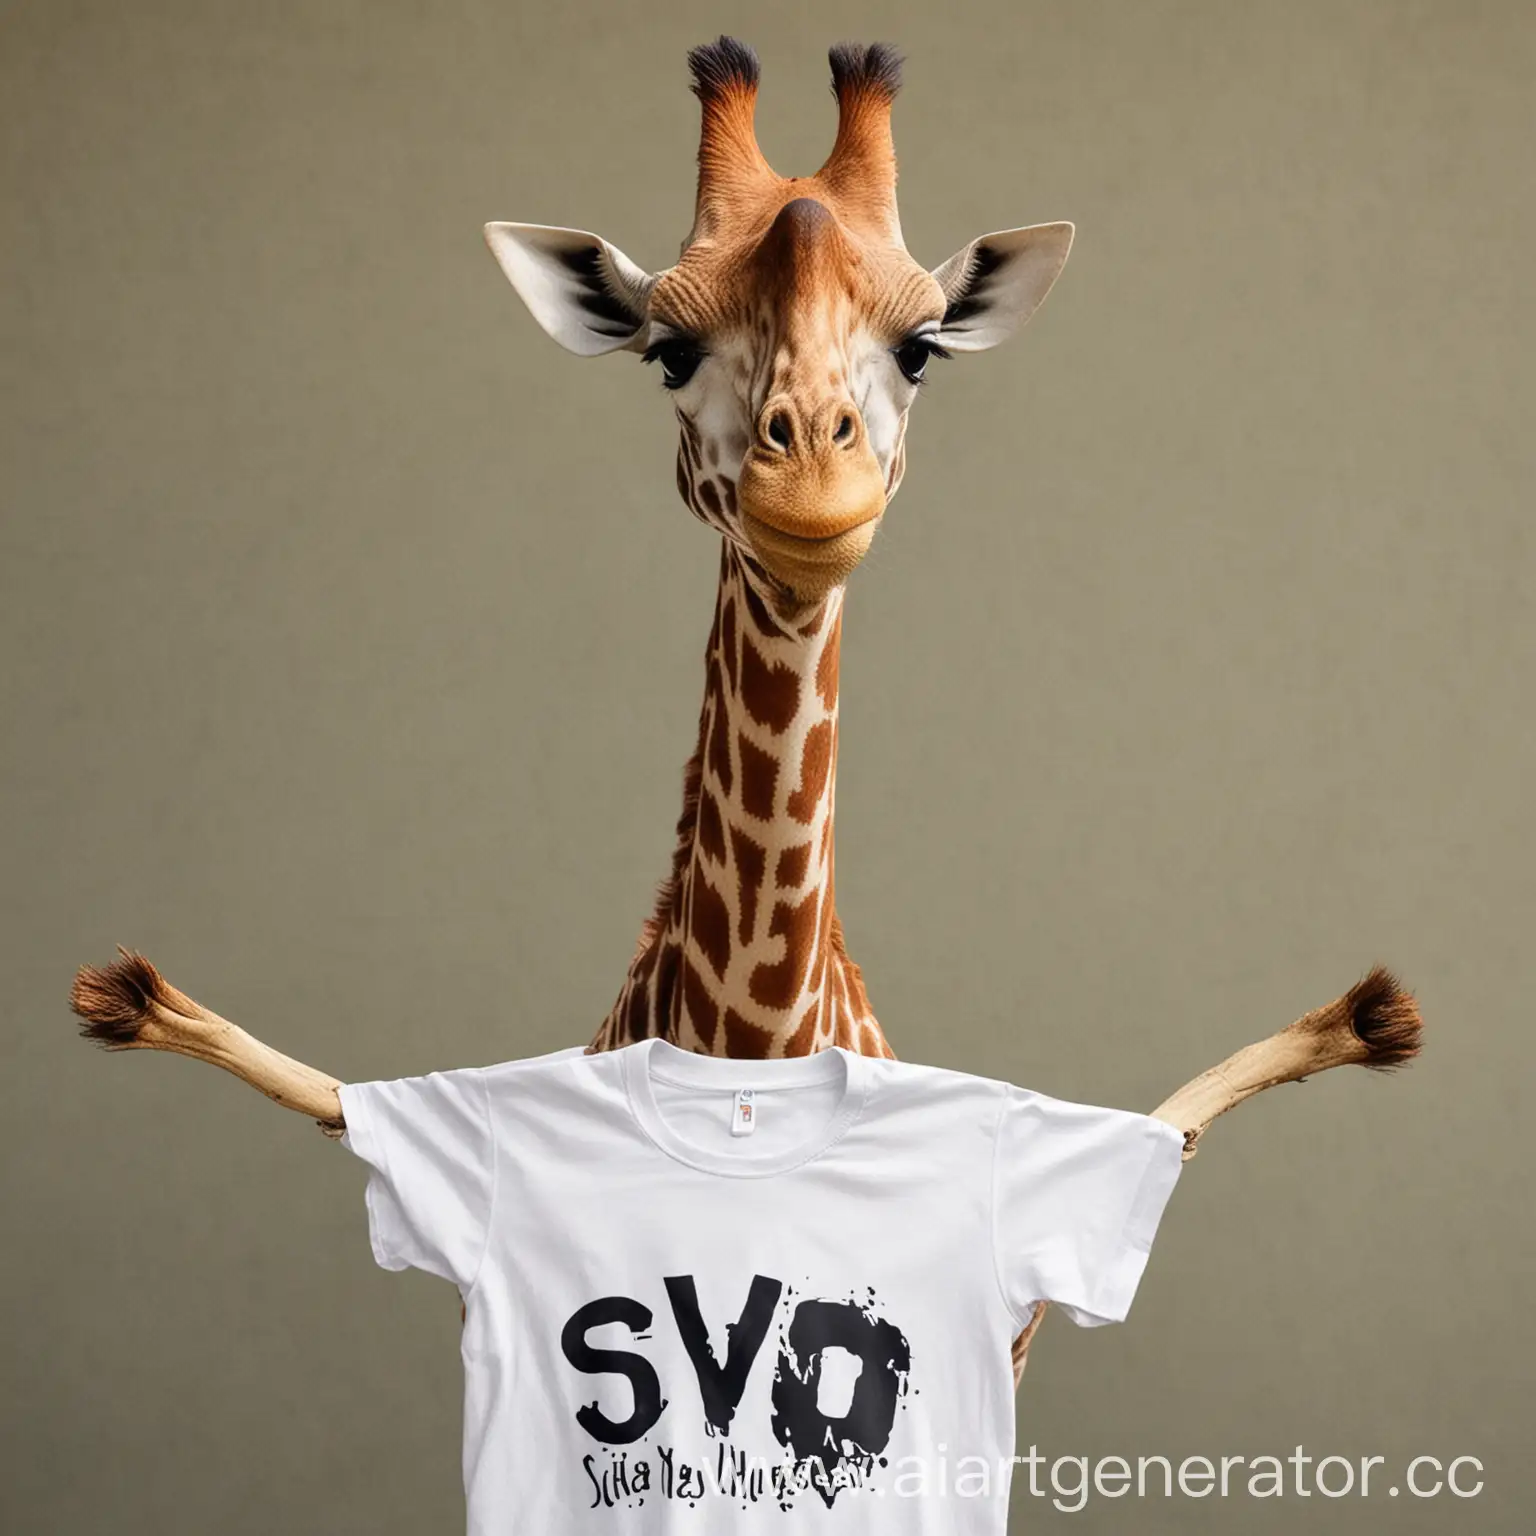 Жираф с футболкой на которой написанно SVO